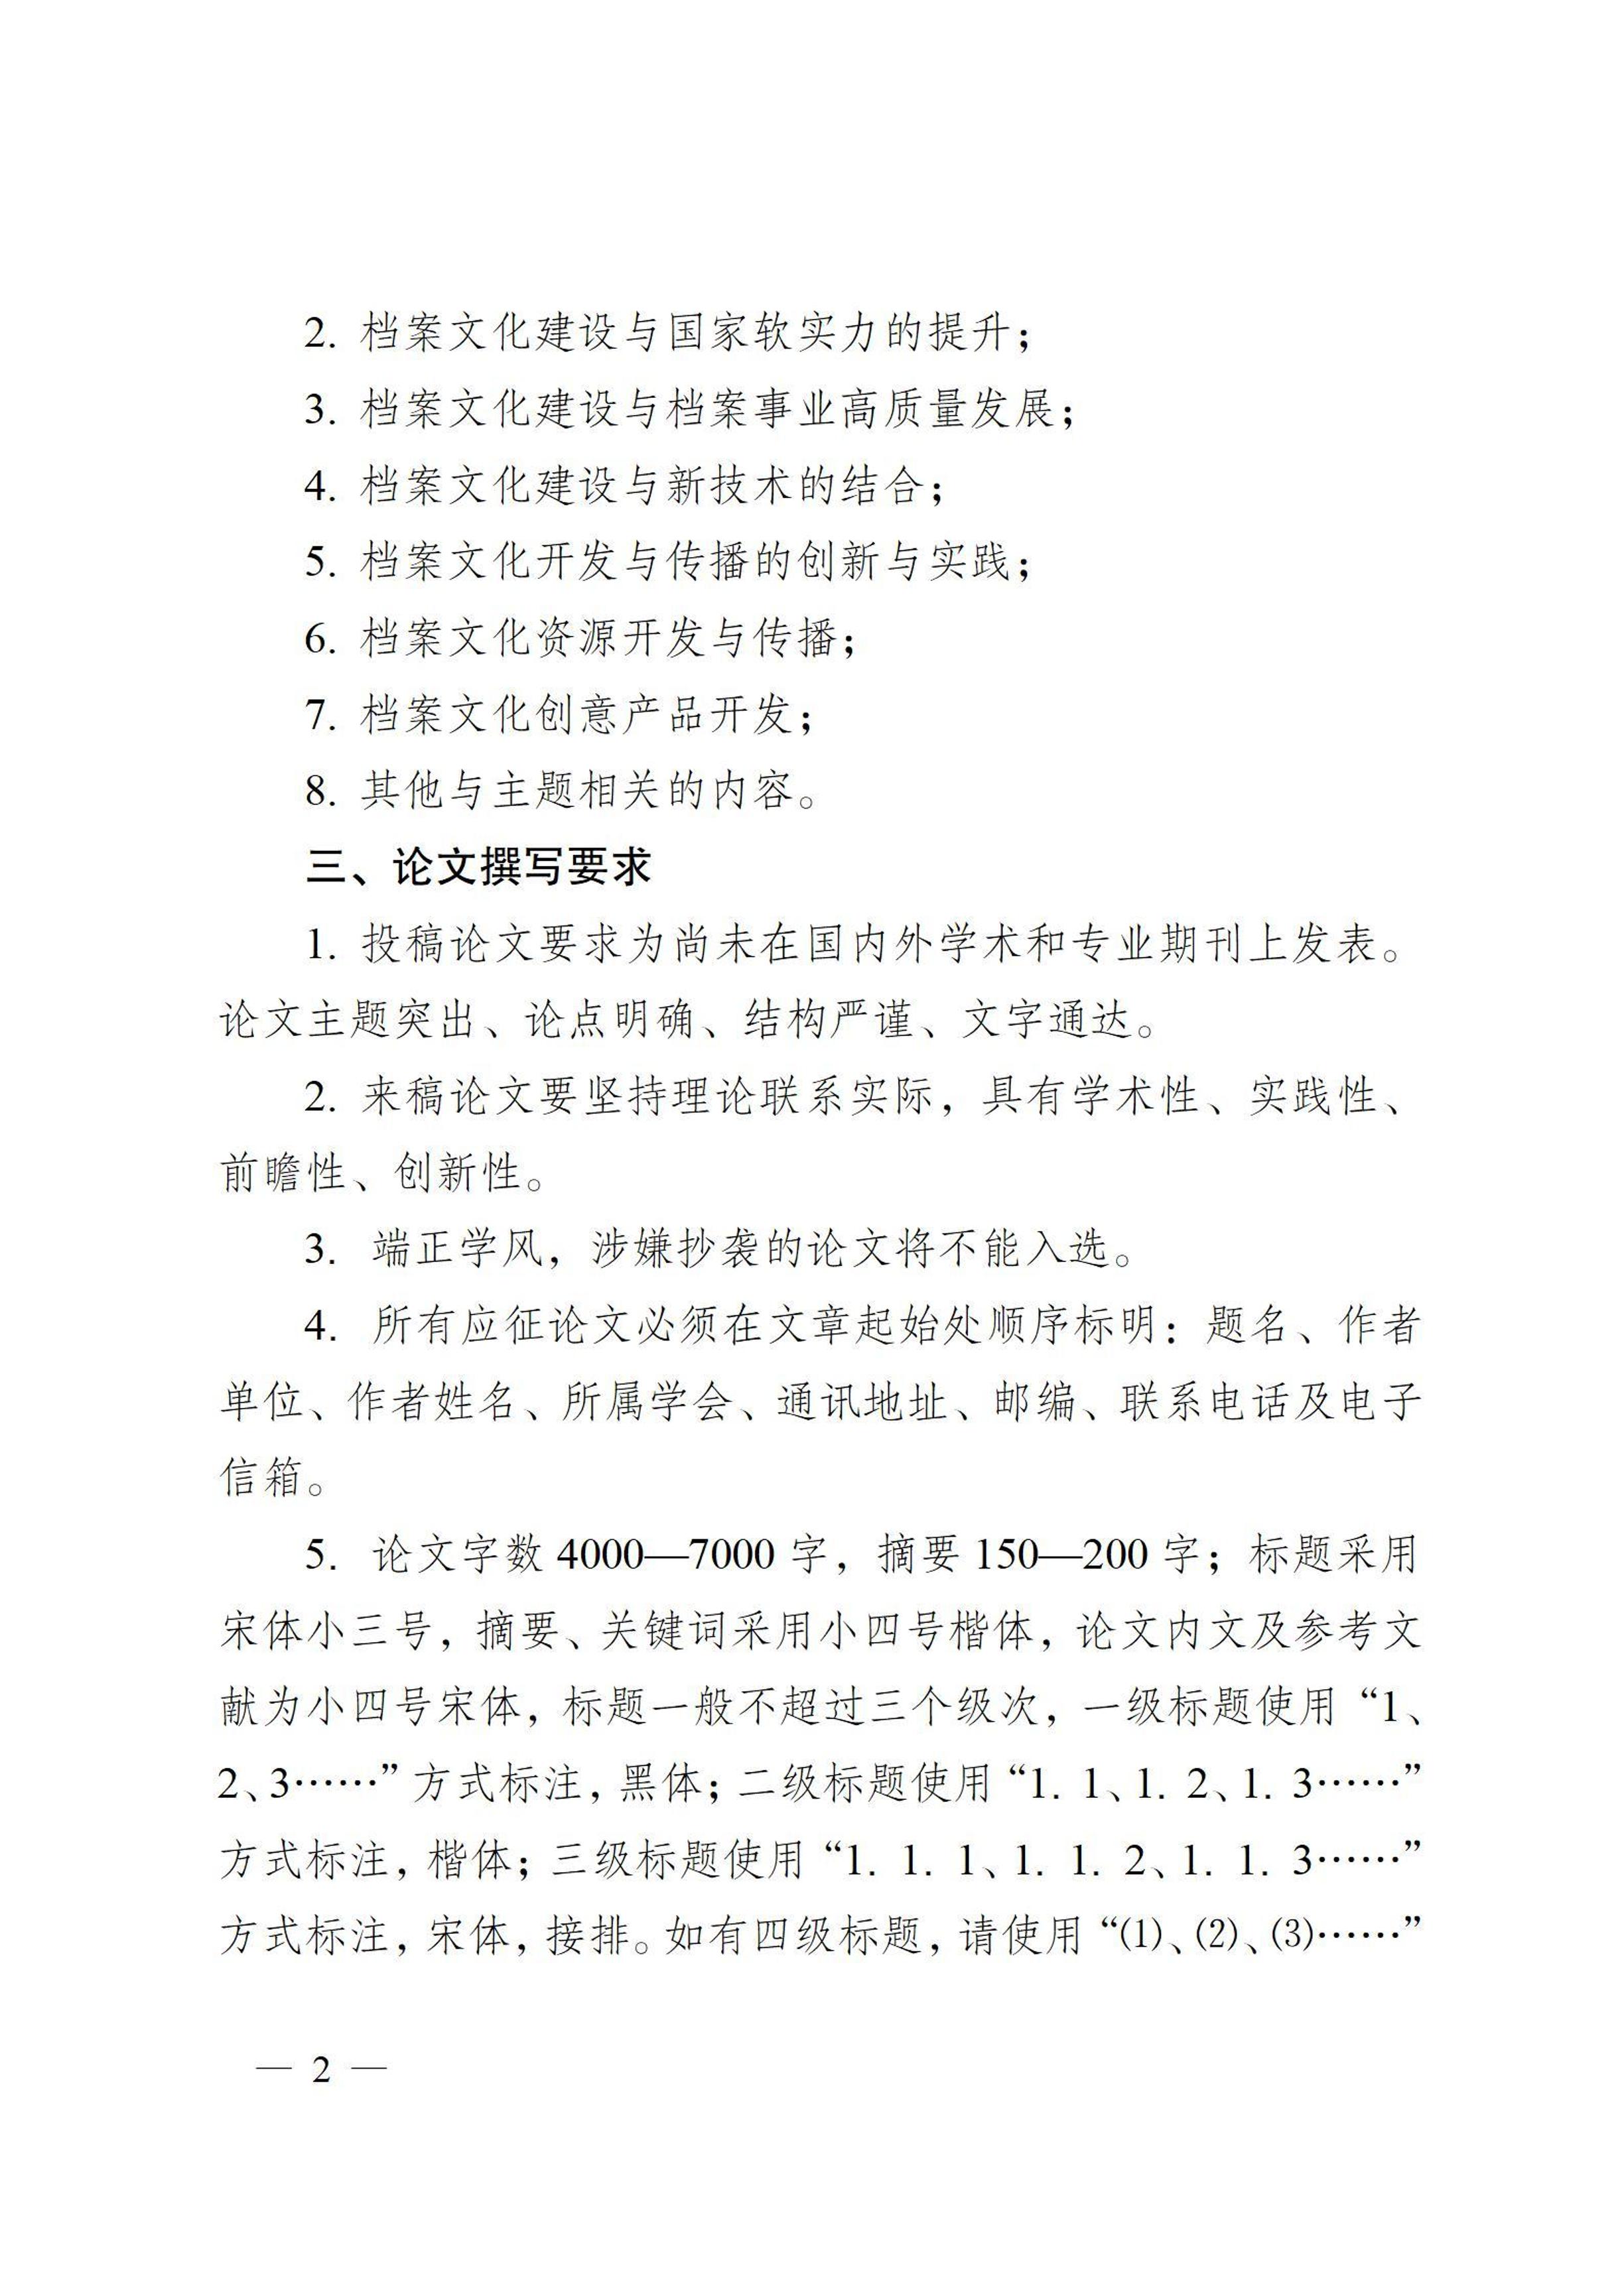 中国档案学会档案文化专业委员会征文通知-1